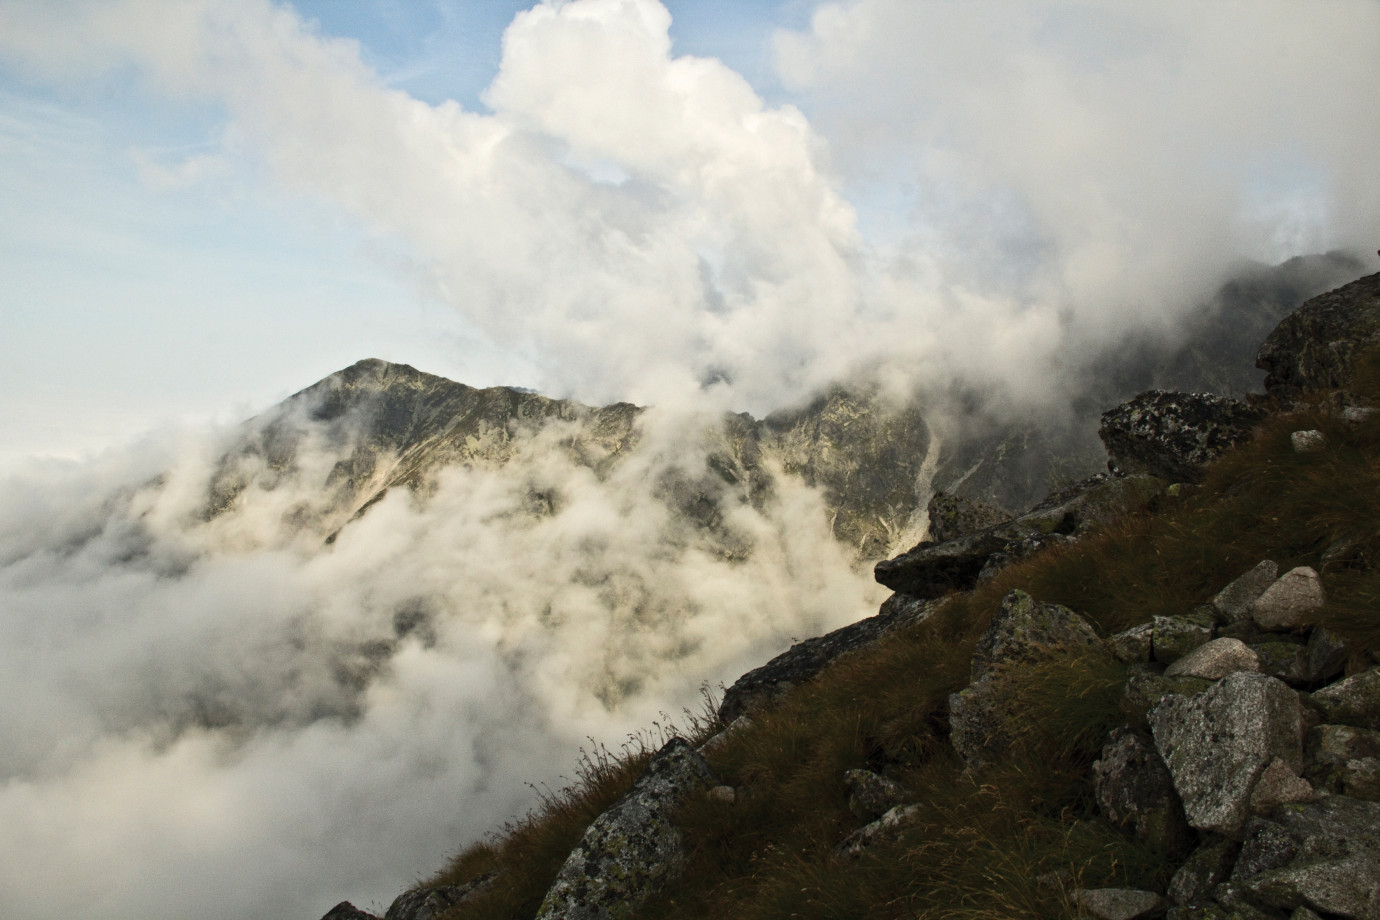 fotograf pruszkow adam-sledziak portfolio zdjecia krajobrazu gory mazury